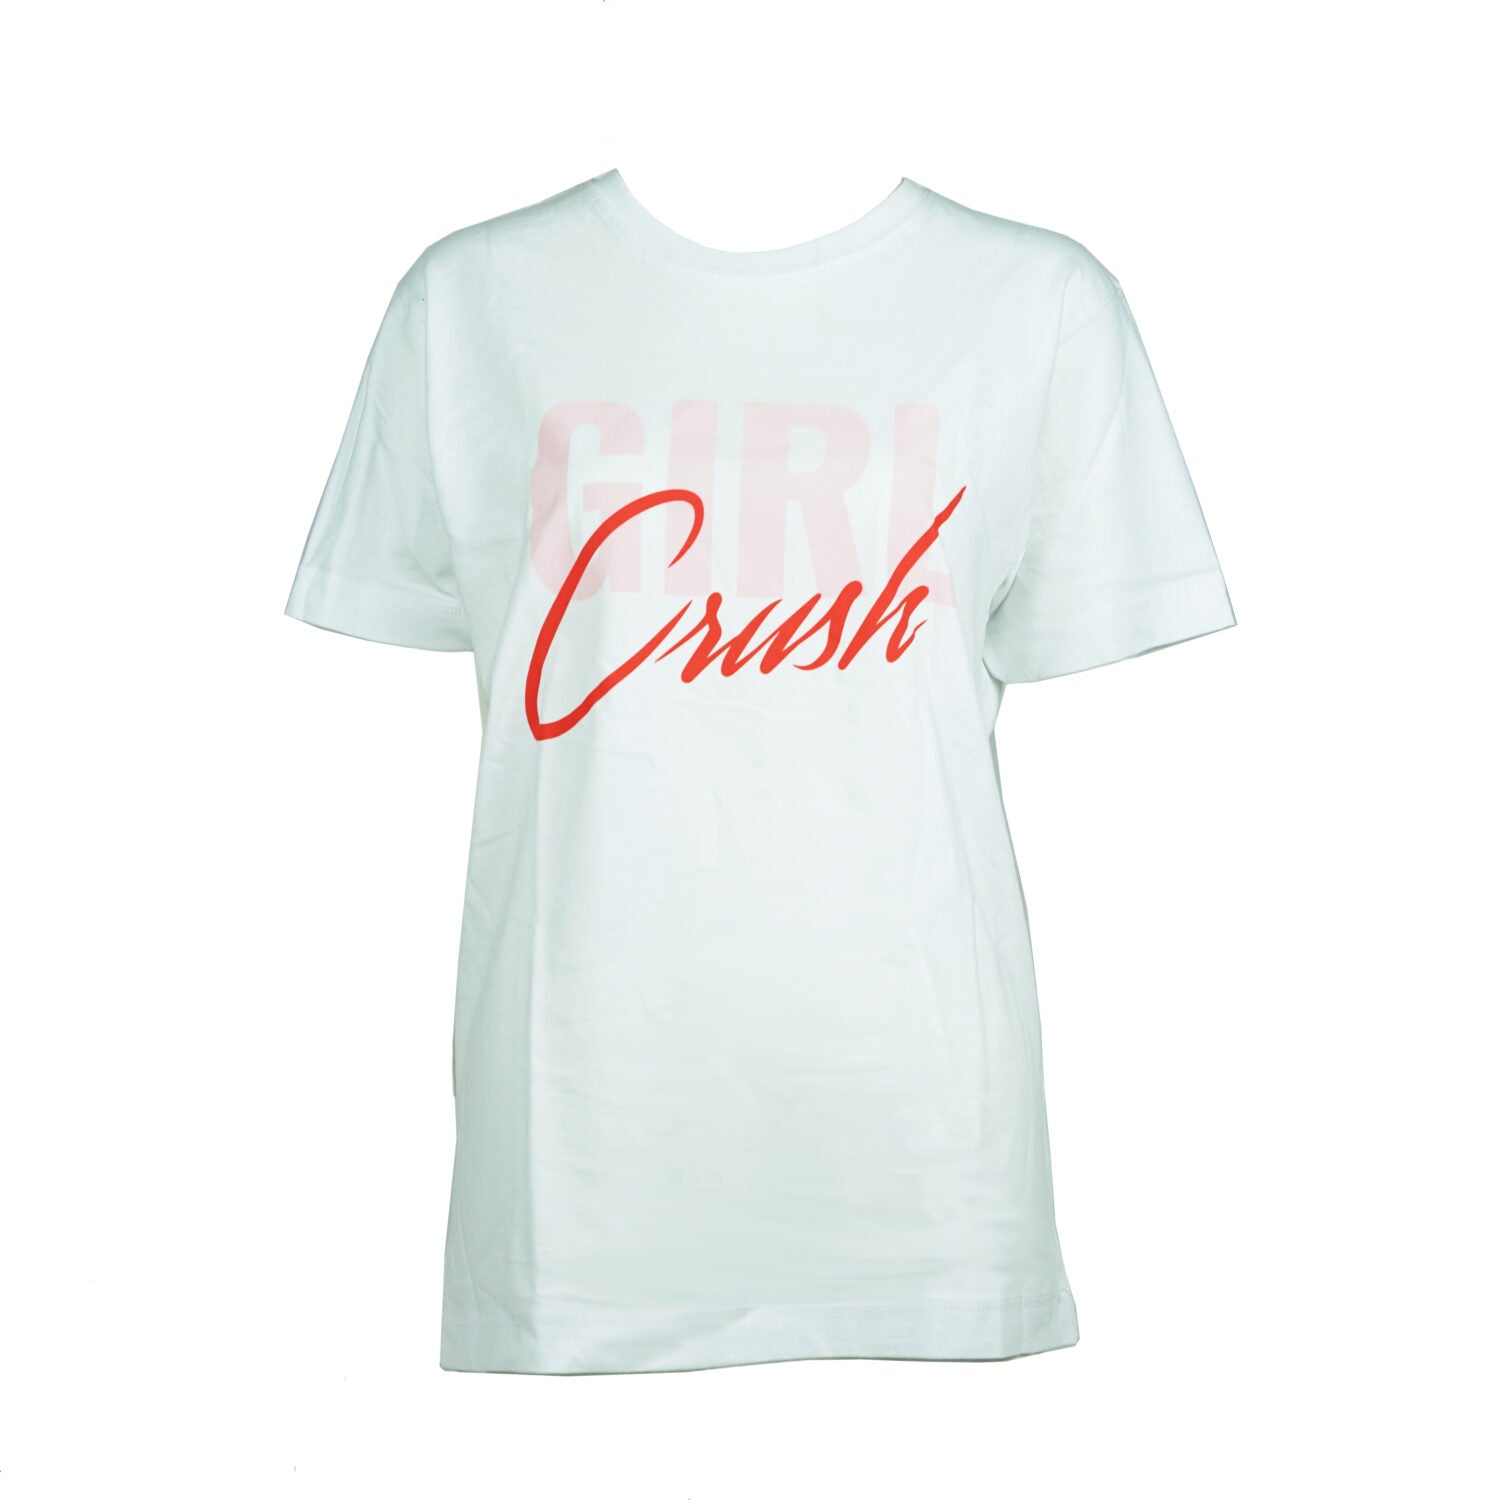 hey soho T-Shirt Girl Crush